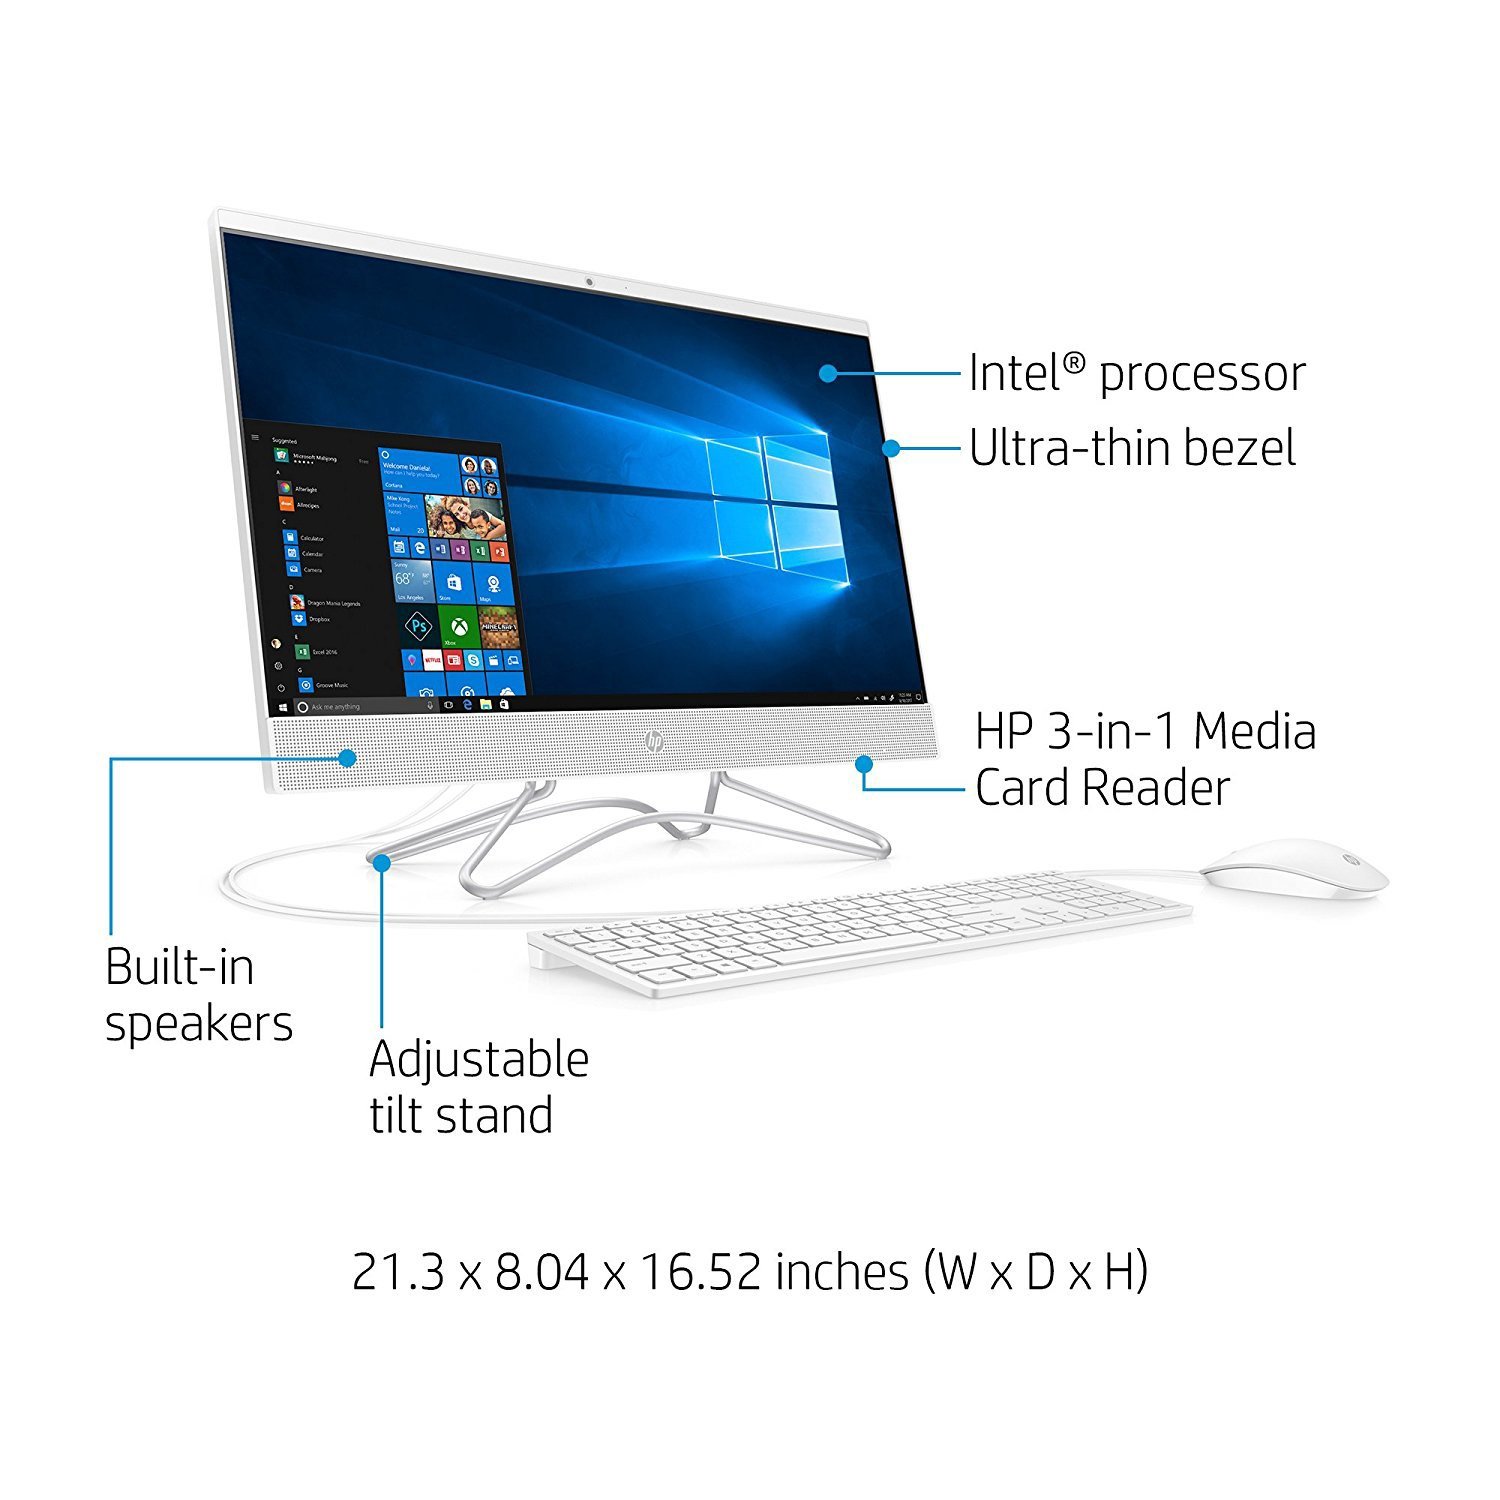 Features of the HP desktop computer